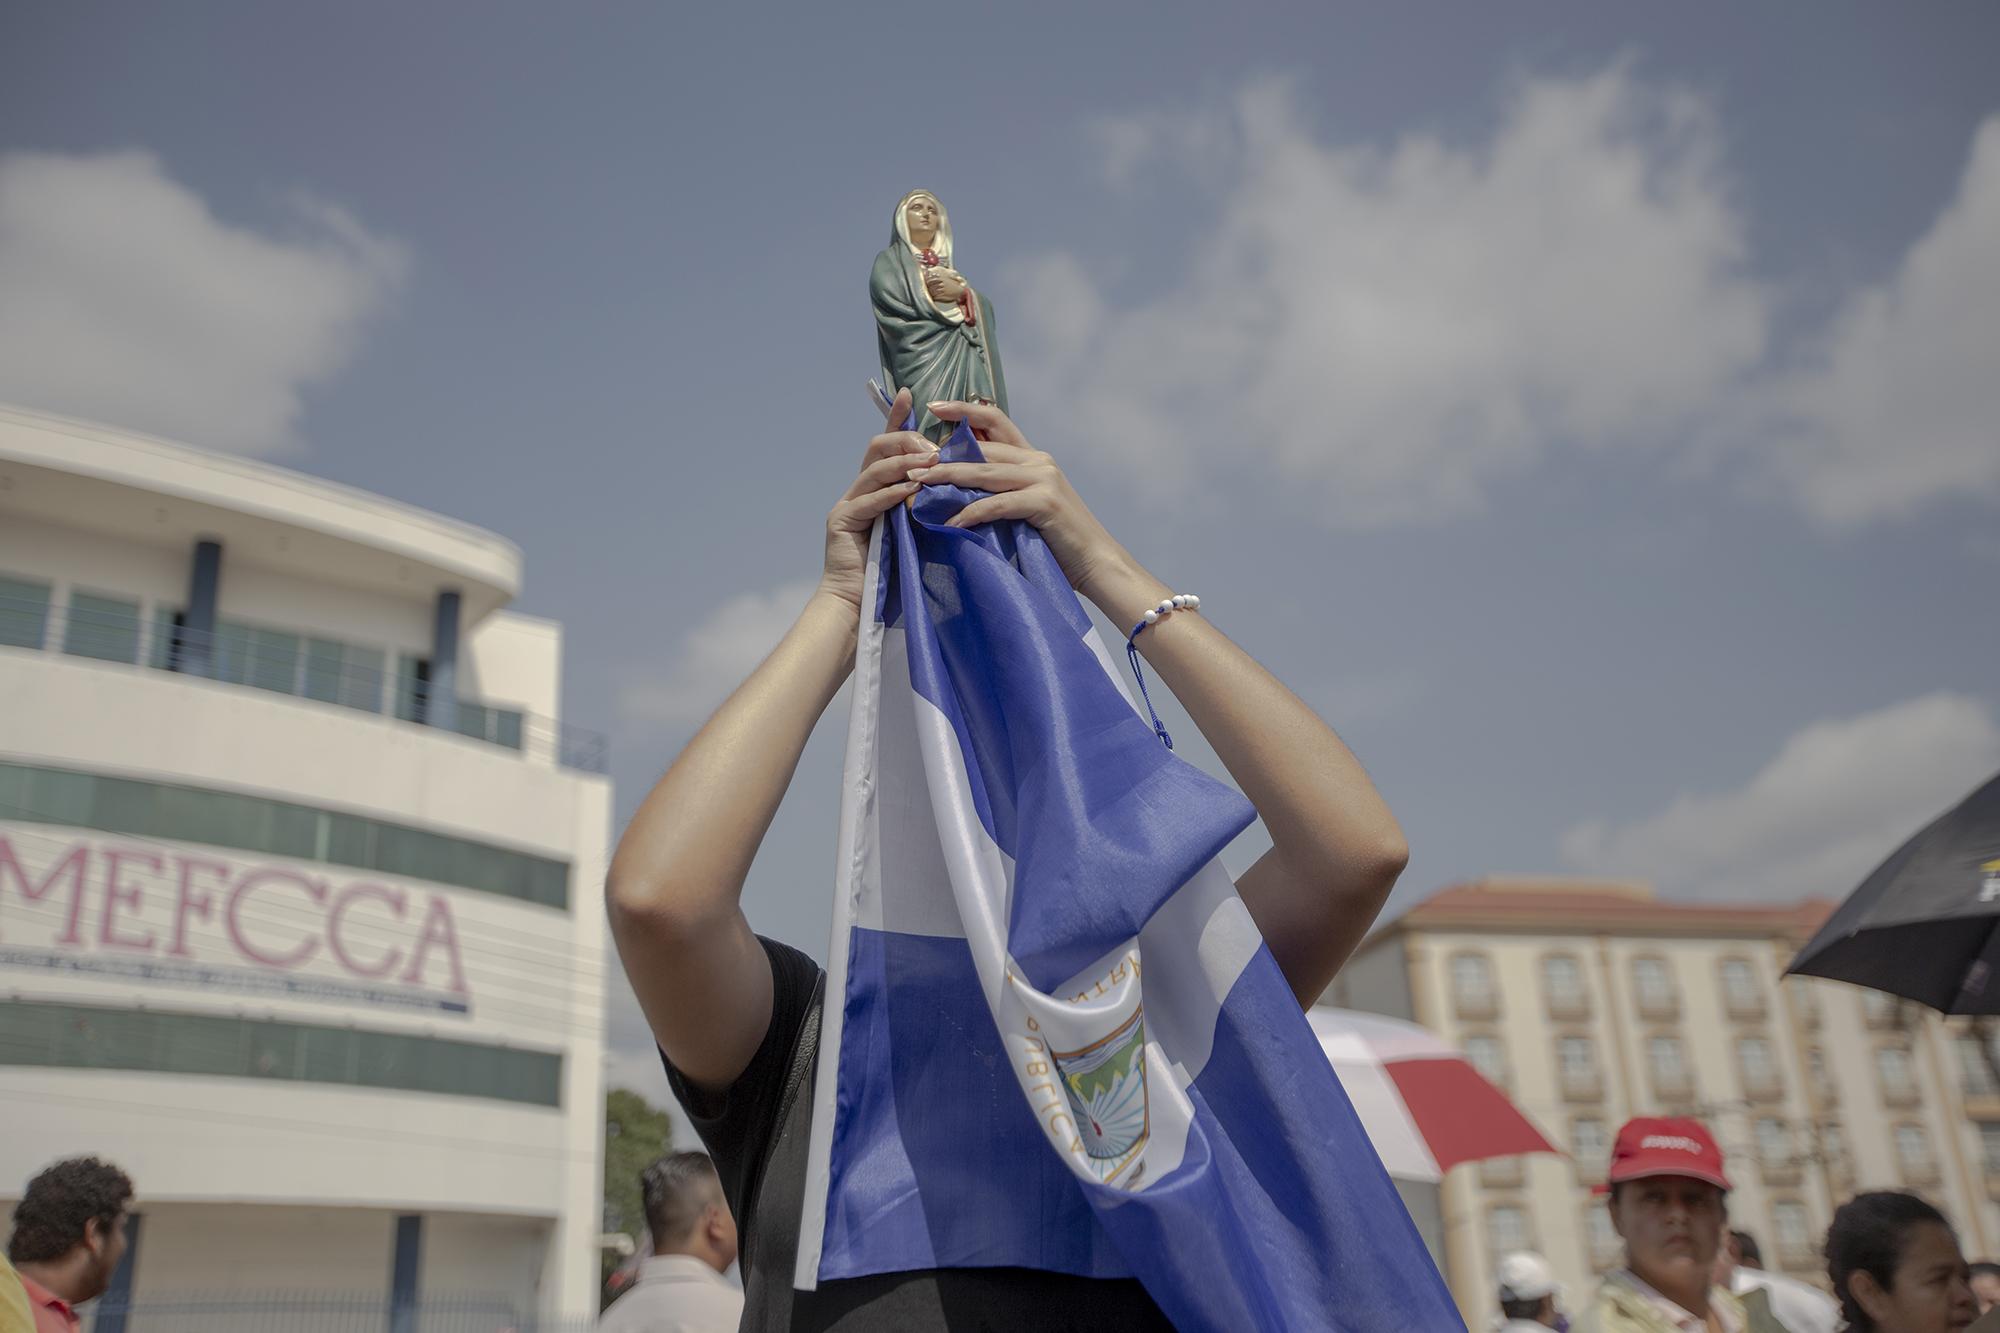 Una mujer nicaragüense carga una imagen de la Virgen Dolorosa con una bandera de Nicaragua durante la procesión del viernes santo en las cercanías de la catedral de Managua. La mujer, que no brindó su nombre por miedo a represalias de parte del gobierno o de paramilitares, asegura que llevar la bandera a la procesión es un acto de protesta y de fe por el sufrimiento que ha tenido el país desde abril de 2018, cuando se desató una crisis política seguida de una brutal represión y persecución por parte del Estado y grupos orteguistas contra los opositores políticos. En el último capítulo de la crisis, el régimen excarceló el 30 de diciembre a 91 presos políticos. Foto: Fred Ramos